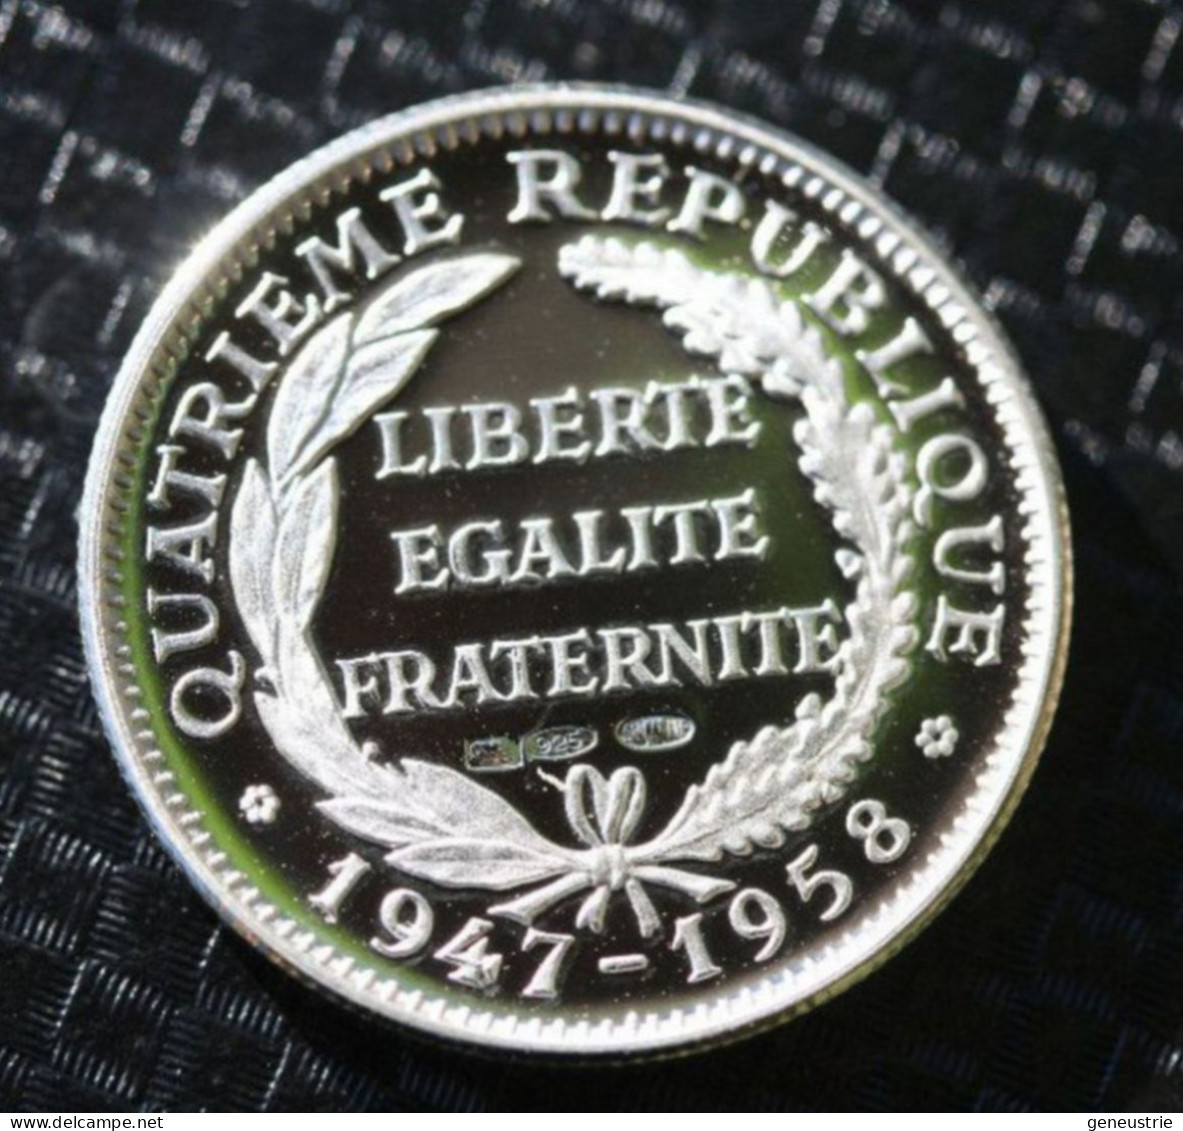 Beau Jeton Argent Poinçonnée 925 - 21mm "Président De La République Vincent Auriol" French President Token - Monedas Elongadas (elongated Coins)